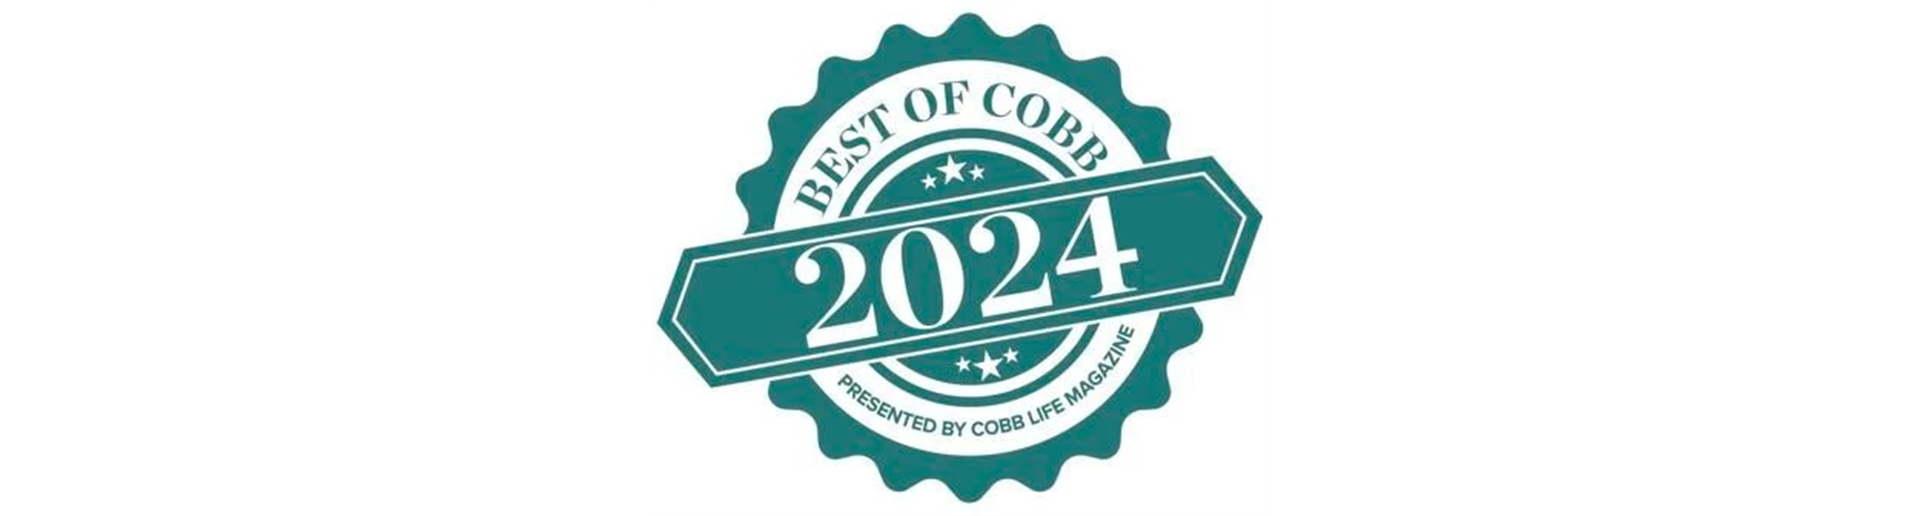 Nominated Best Of Cobb 2024